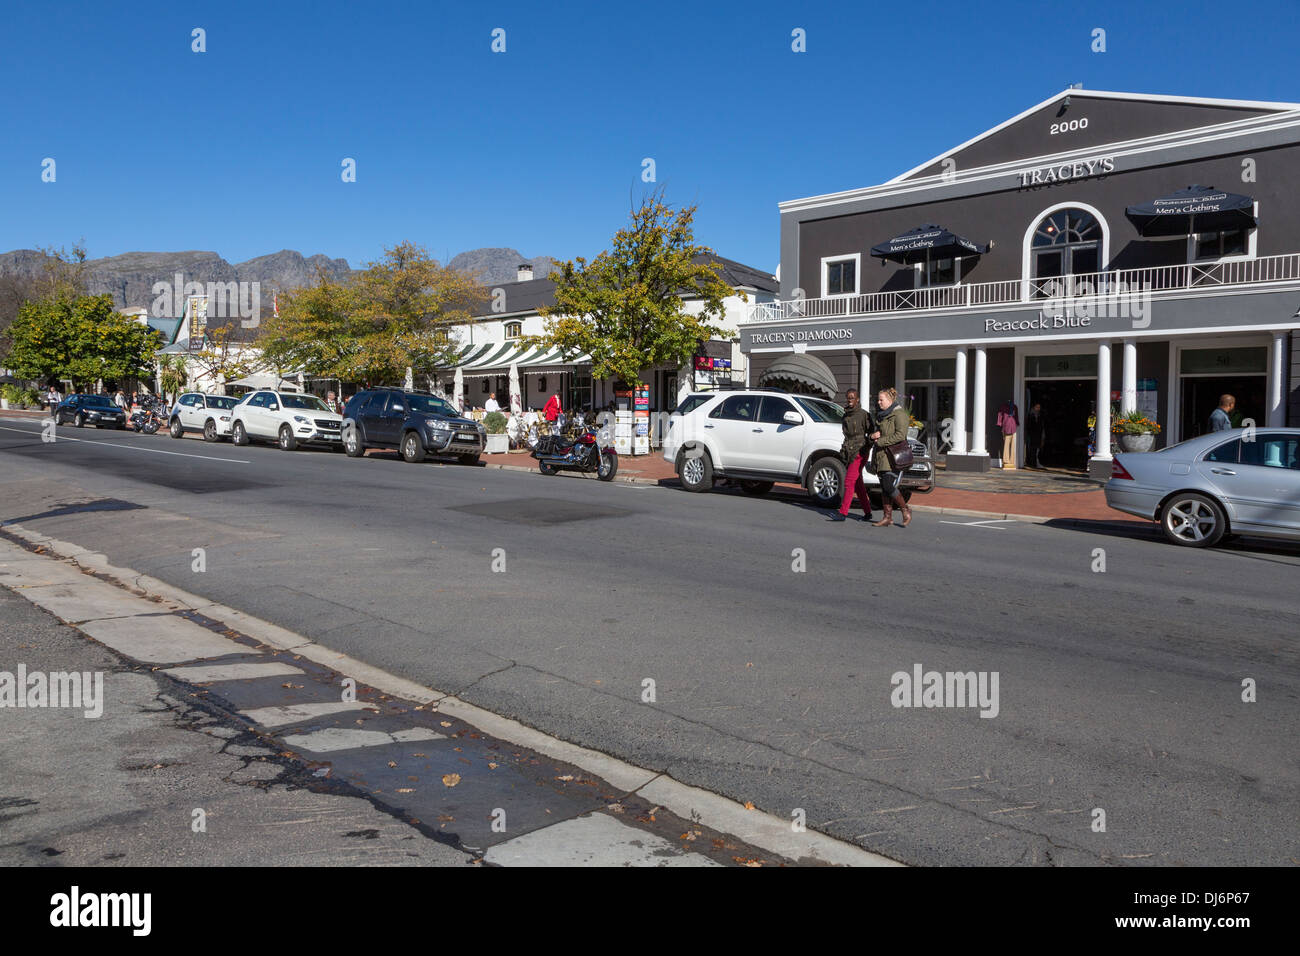 South Africa, Franschhoek. Street Scene. Stock Photo